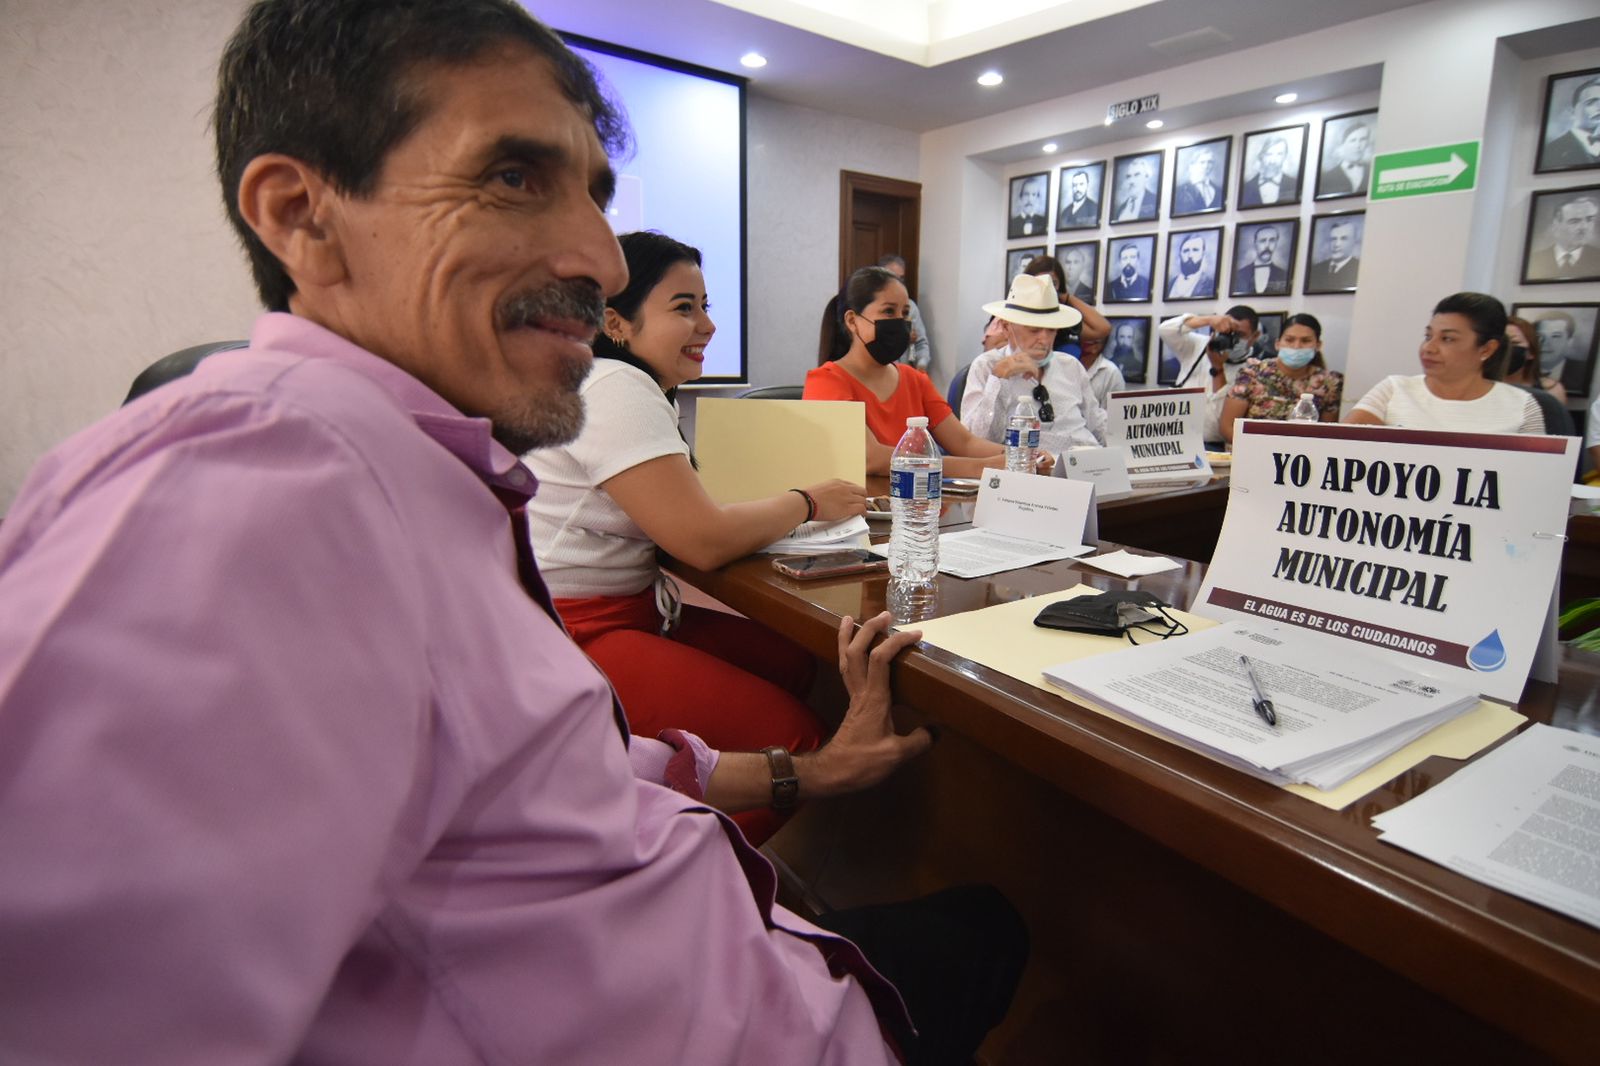 Los ediles José Daniel Gonzalez Méndez y Leonardo Rodríguez Cruz, ambos del partido Movimiento Regeneración Nacional (Morena) fijaron sobre la mesa del cabildo los flyers tamaño carta. (Foto: SERGIO A. RODRÍGUEZ / EL SIGLO COAHUILA)